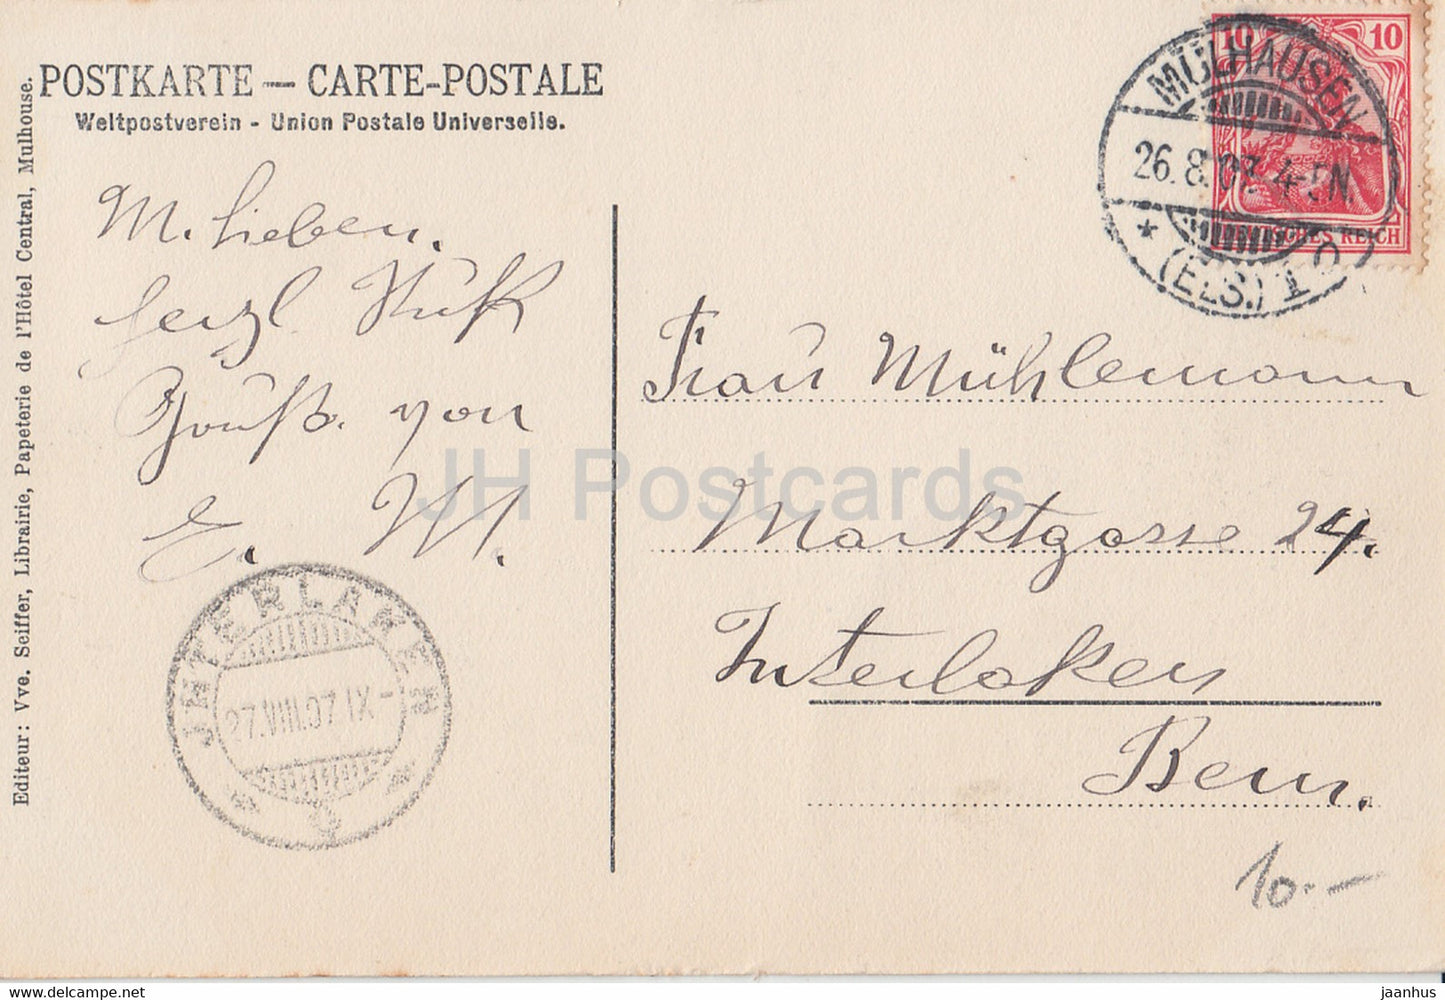 Mulhausen i Els - Mulhouse - La Poste et Bassin - Die Post und Kanal - alte Postkarte - 1907 - Frankreich - gebraucht